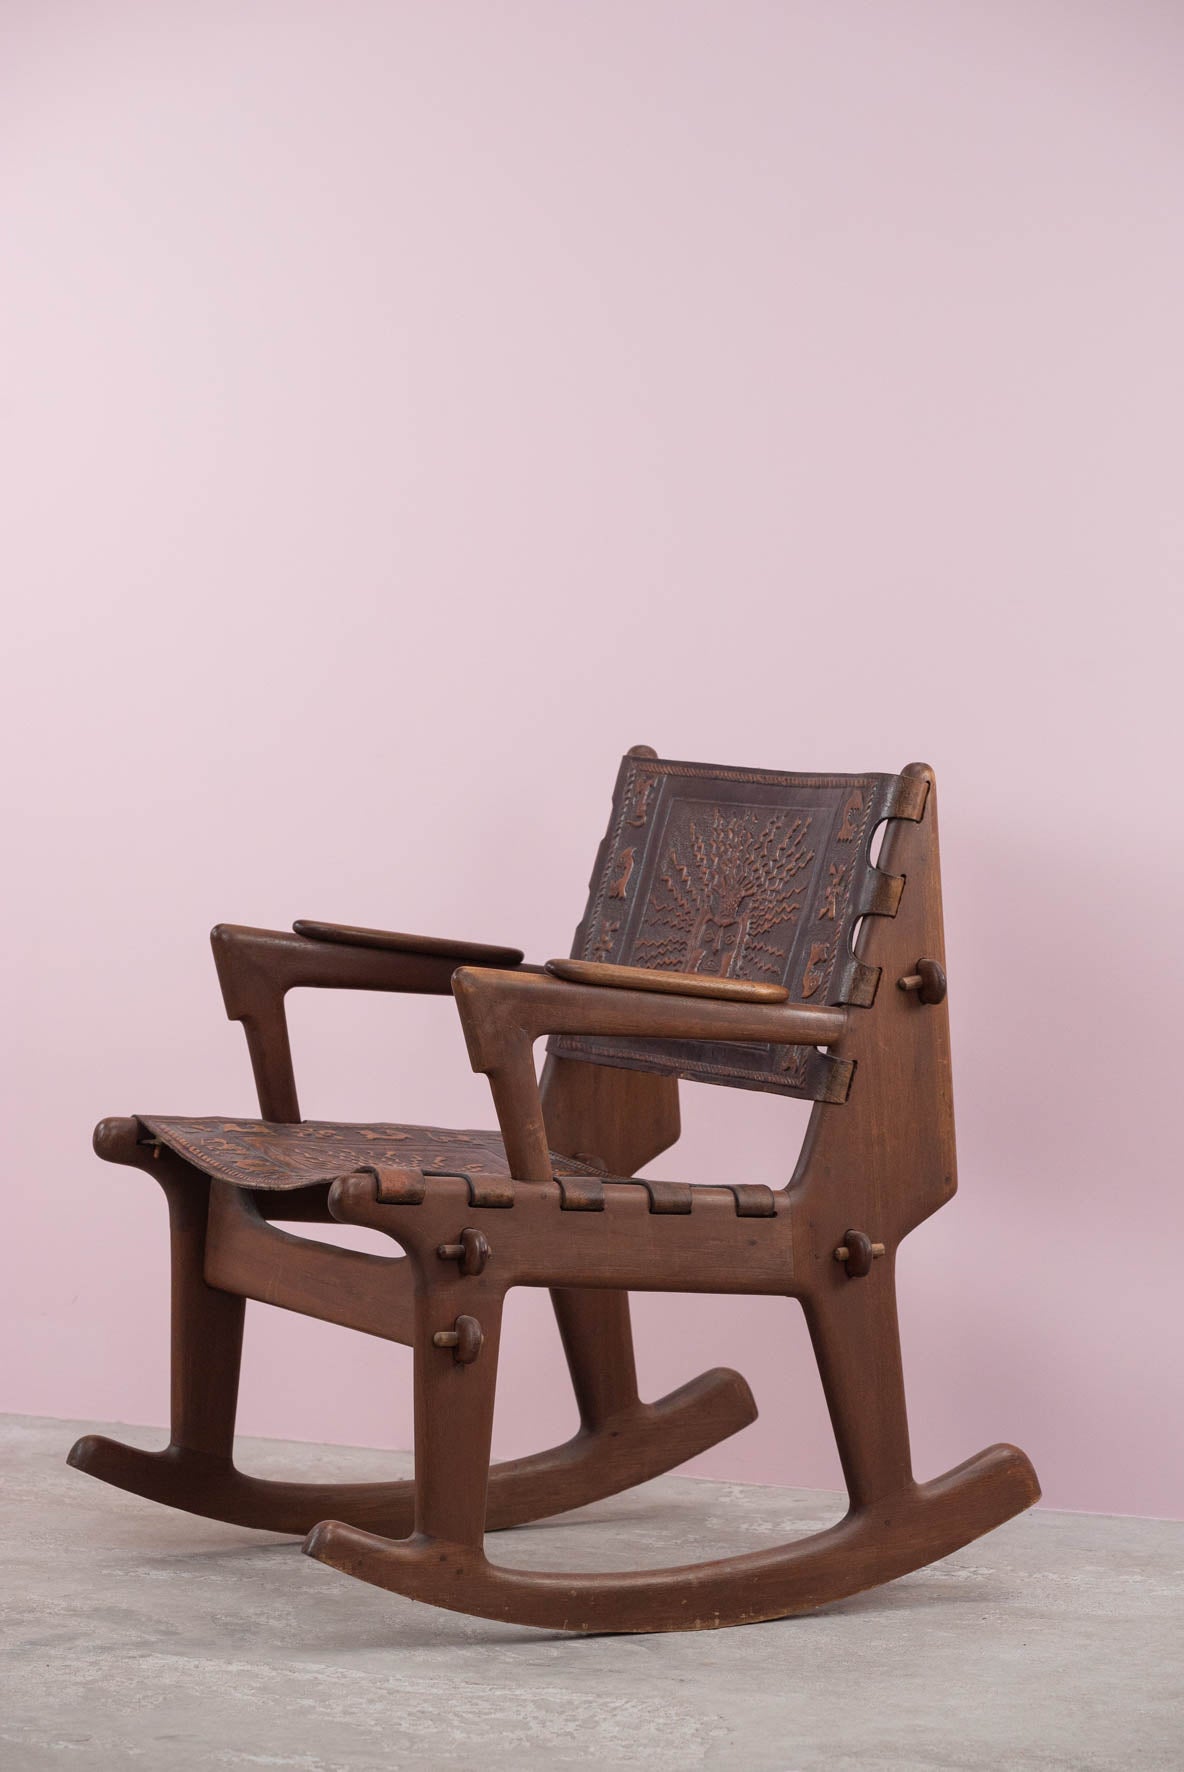 Rocking chair by Angel I Pazmino for Meubles de Estilo